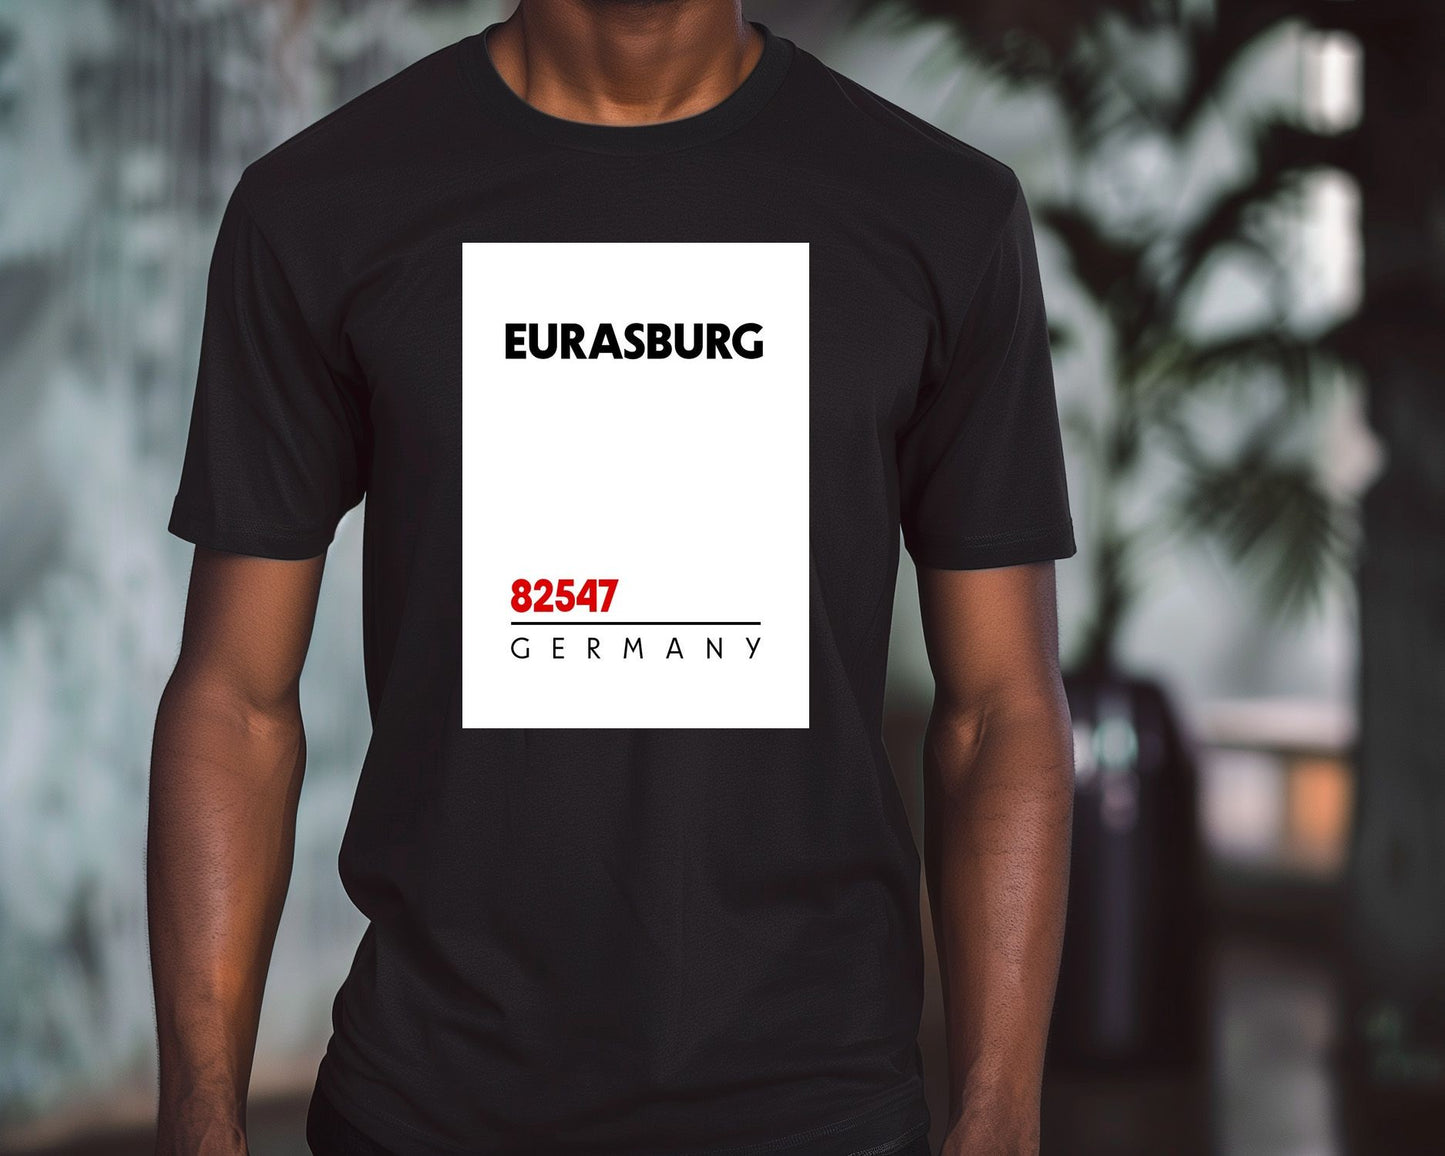 Eurasburg 82547 Postal Code - @VickyHanggara